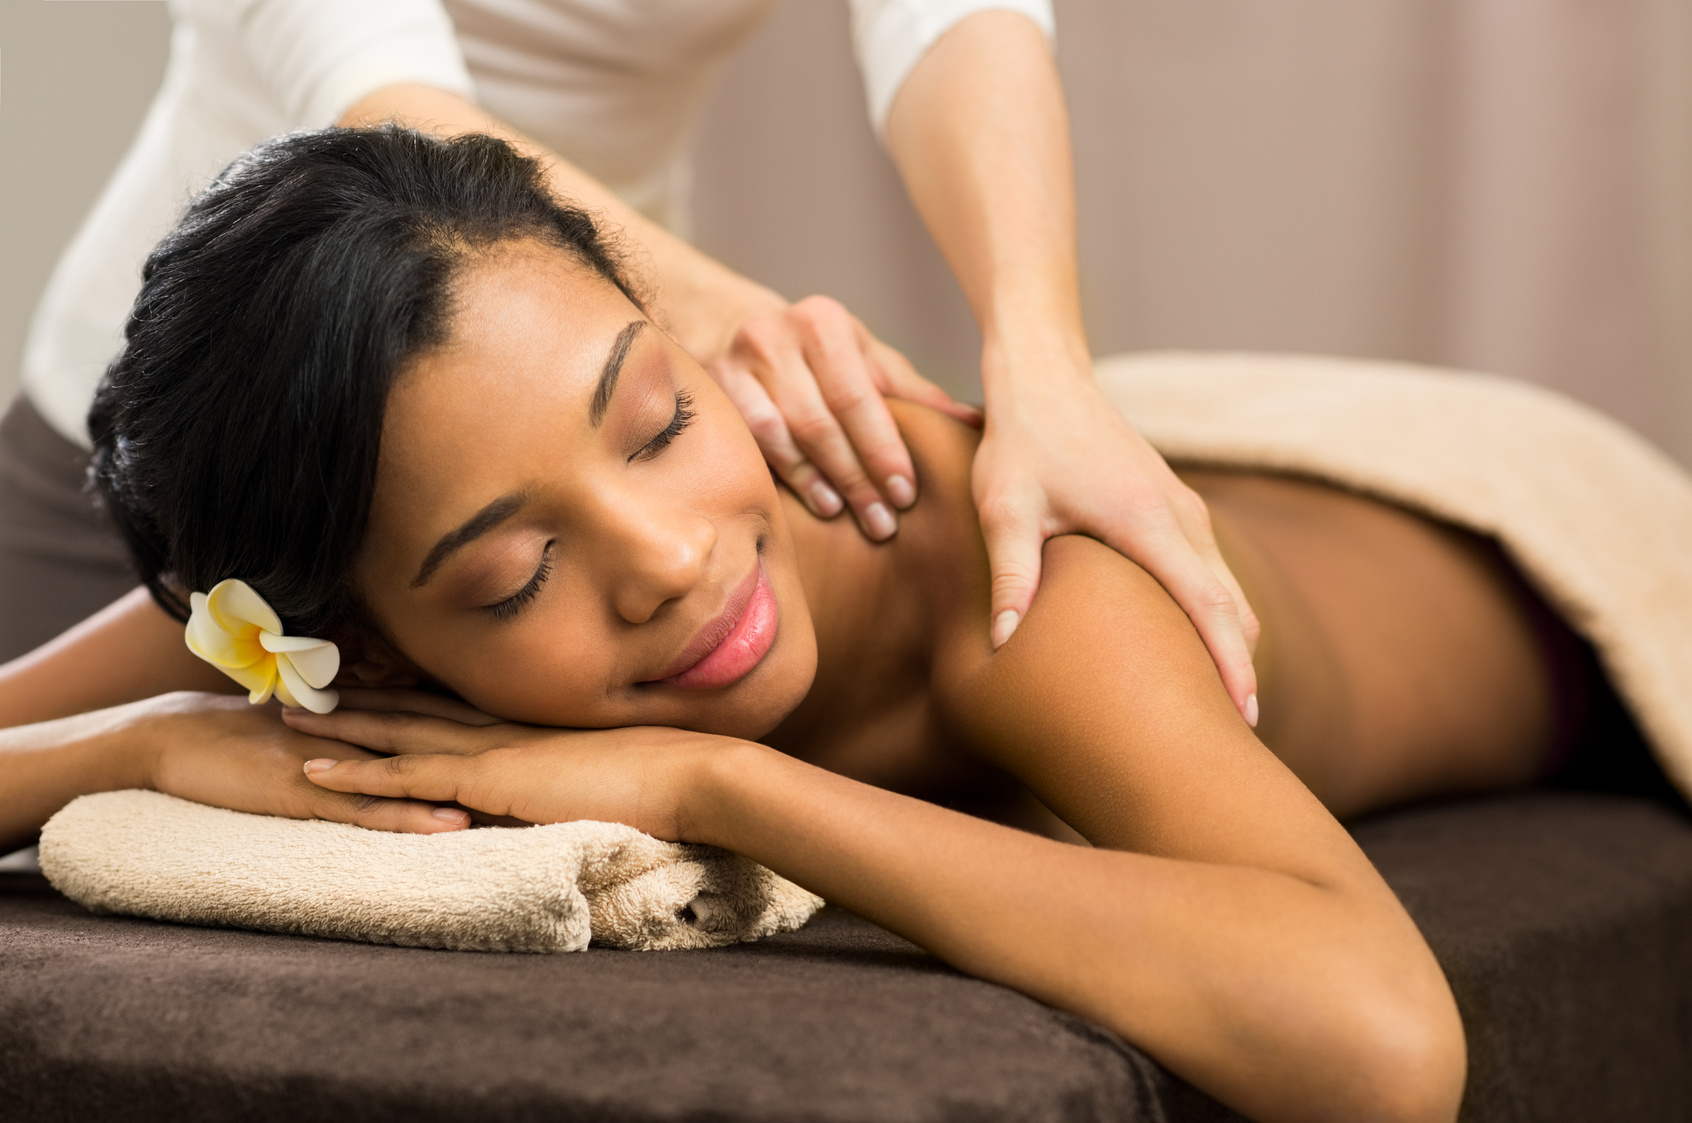 massage therapy logo